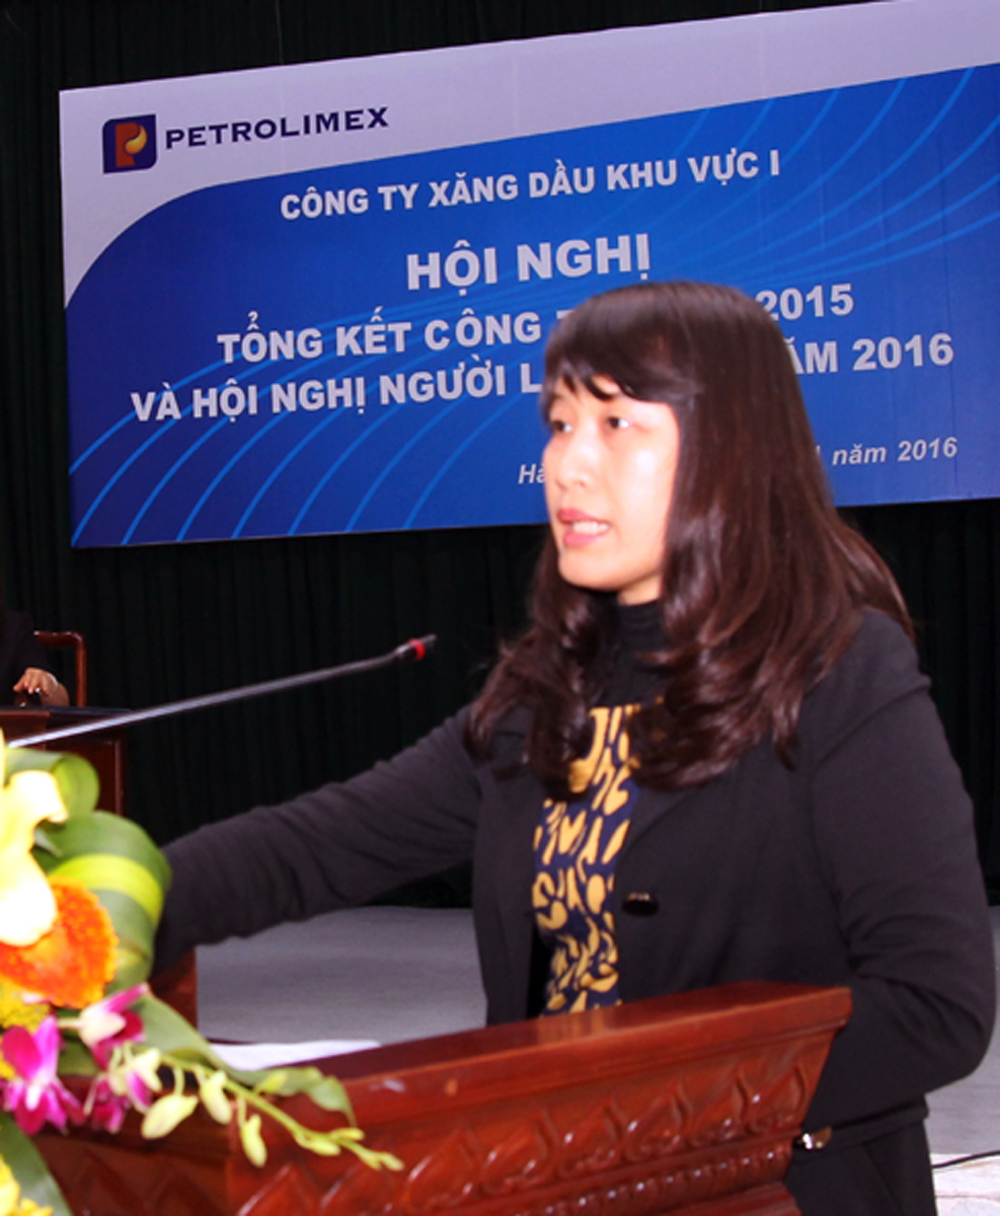 P.Trưởng Phòng KTTC Công ty Trần Thu Hiền, Trưởng Ban thanh tra nhân dân, báo cáo kết quả hoạt động của BTTND